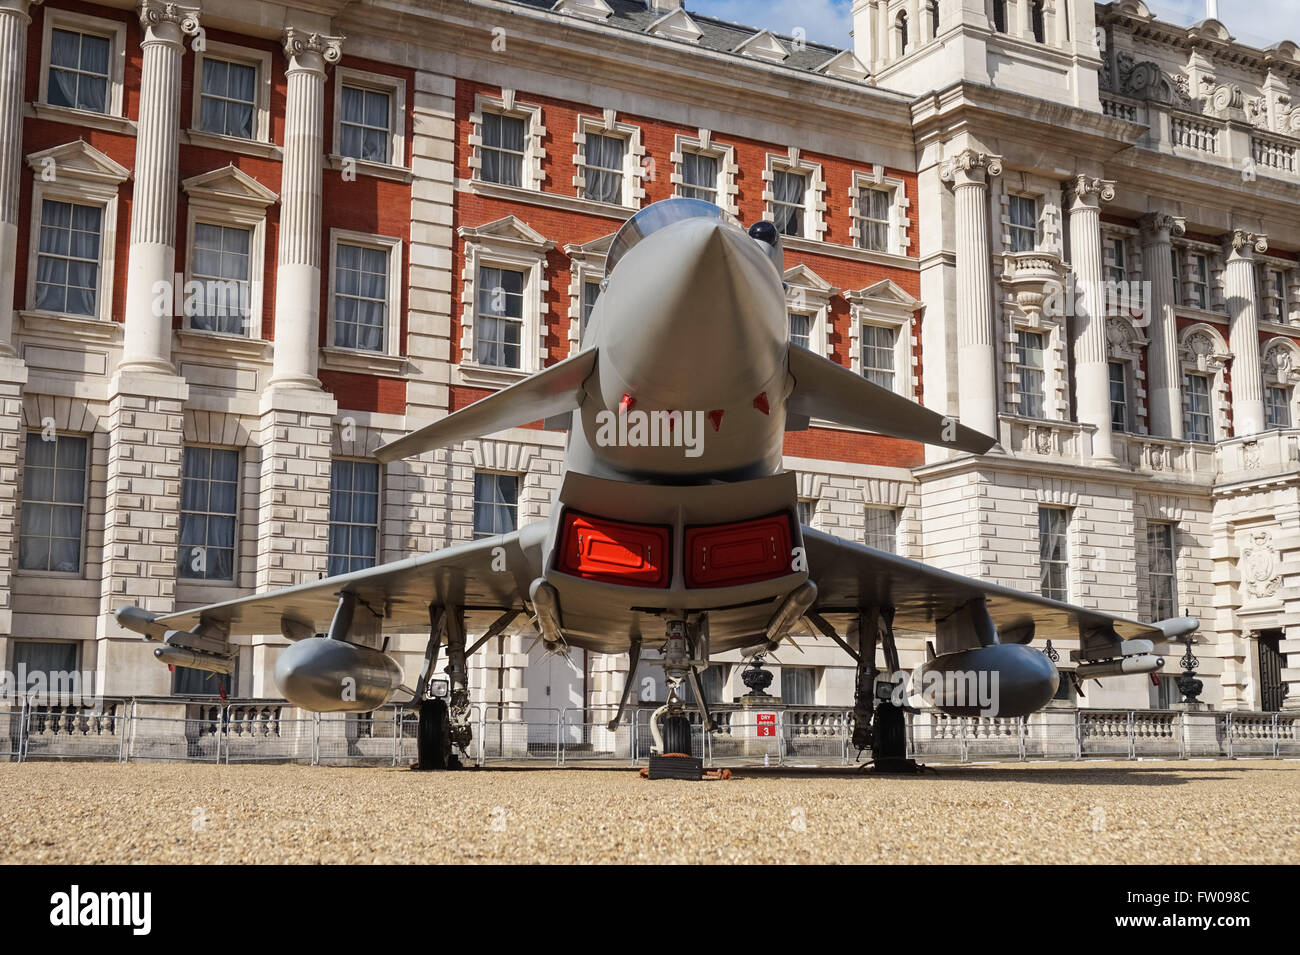 Full-size Nachbau eines Eurofighter Typhoon bei Horse Guards Parade in London ausgestellt das 100-jährige Jubiläum der RAF, London England Vereinigtes Königreich Großbritannien Stockfoto